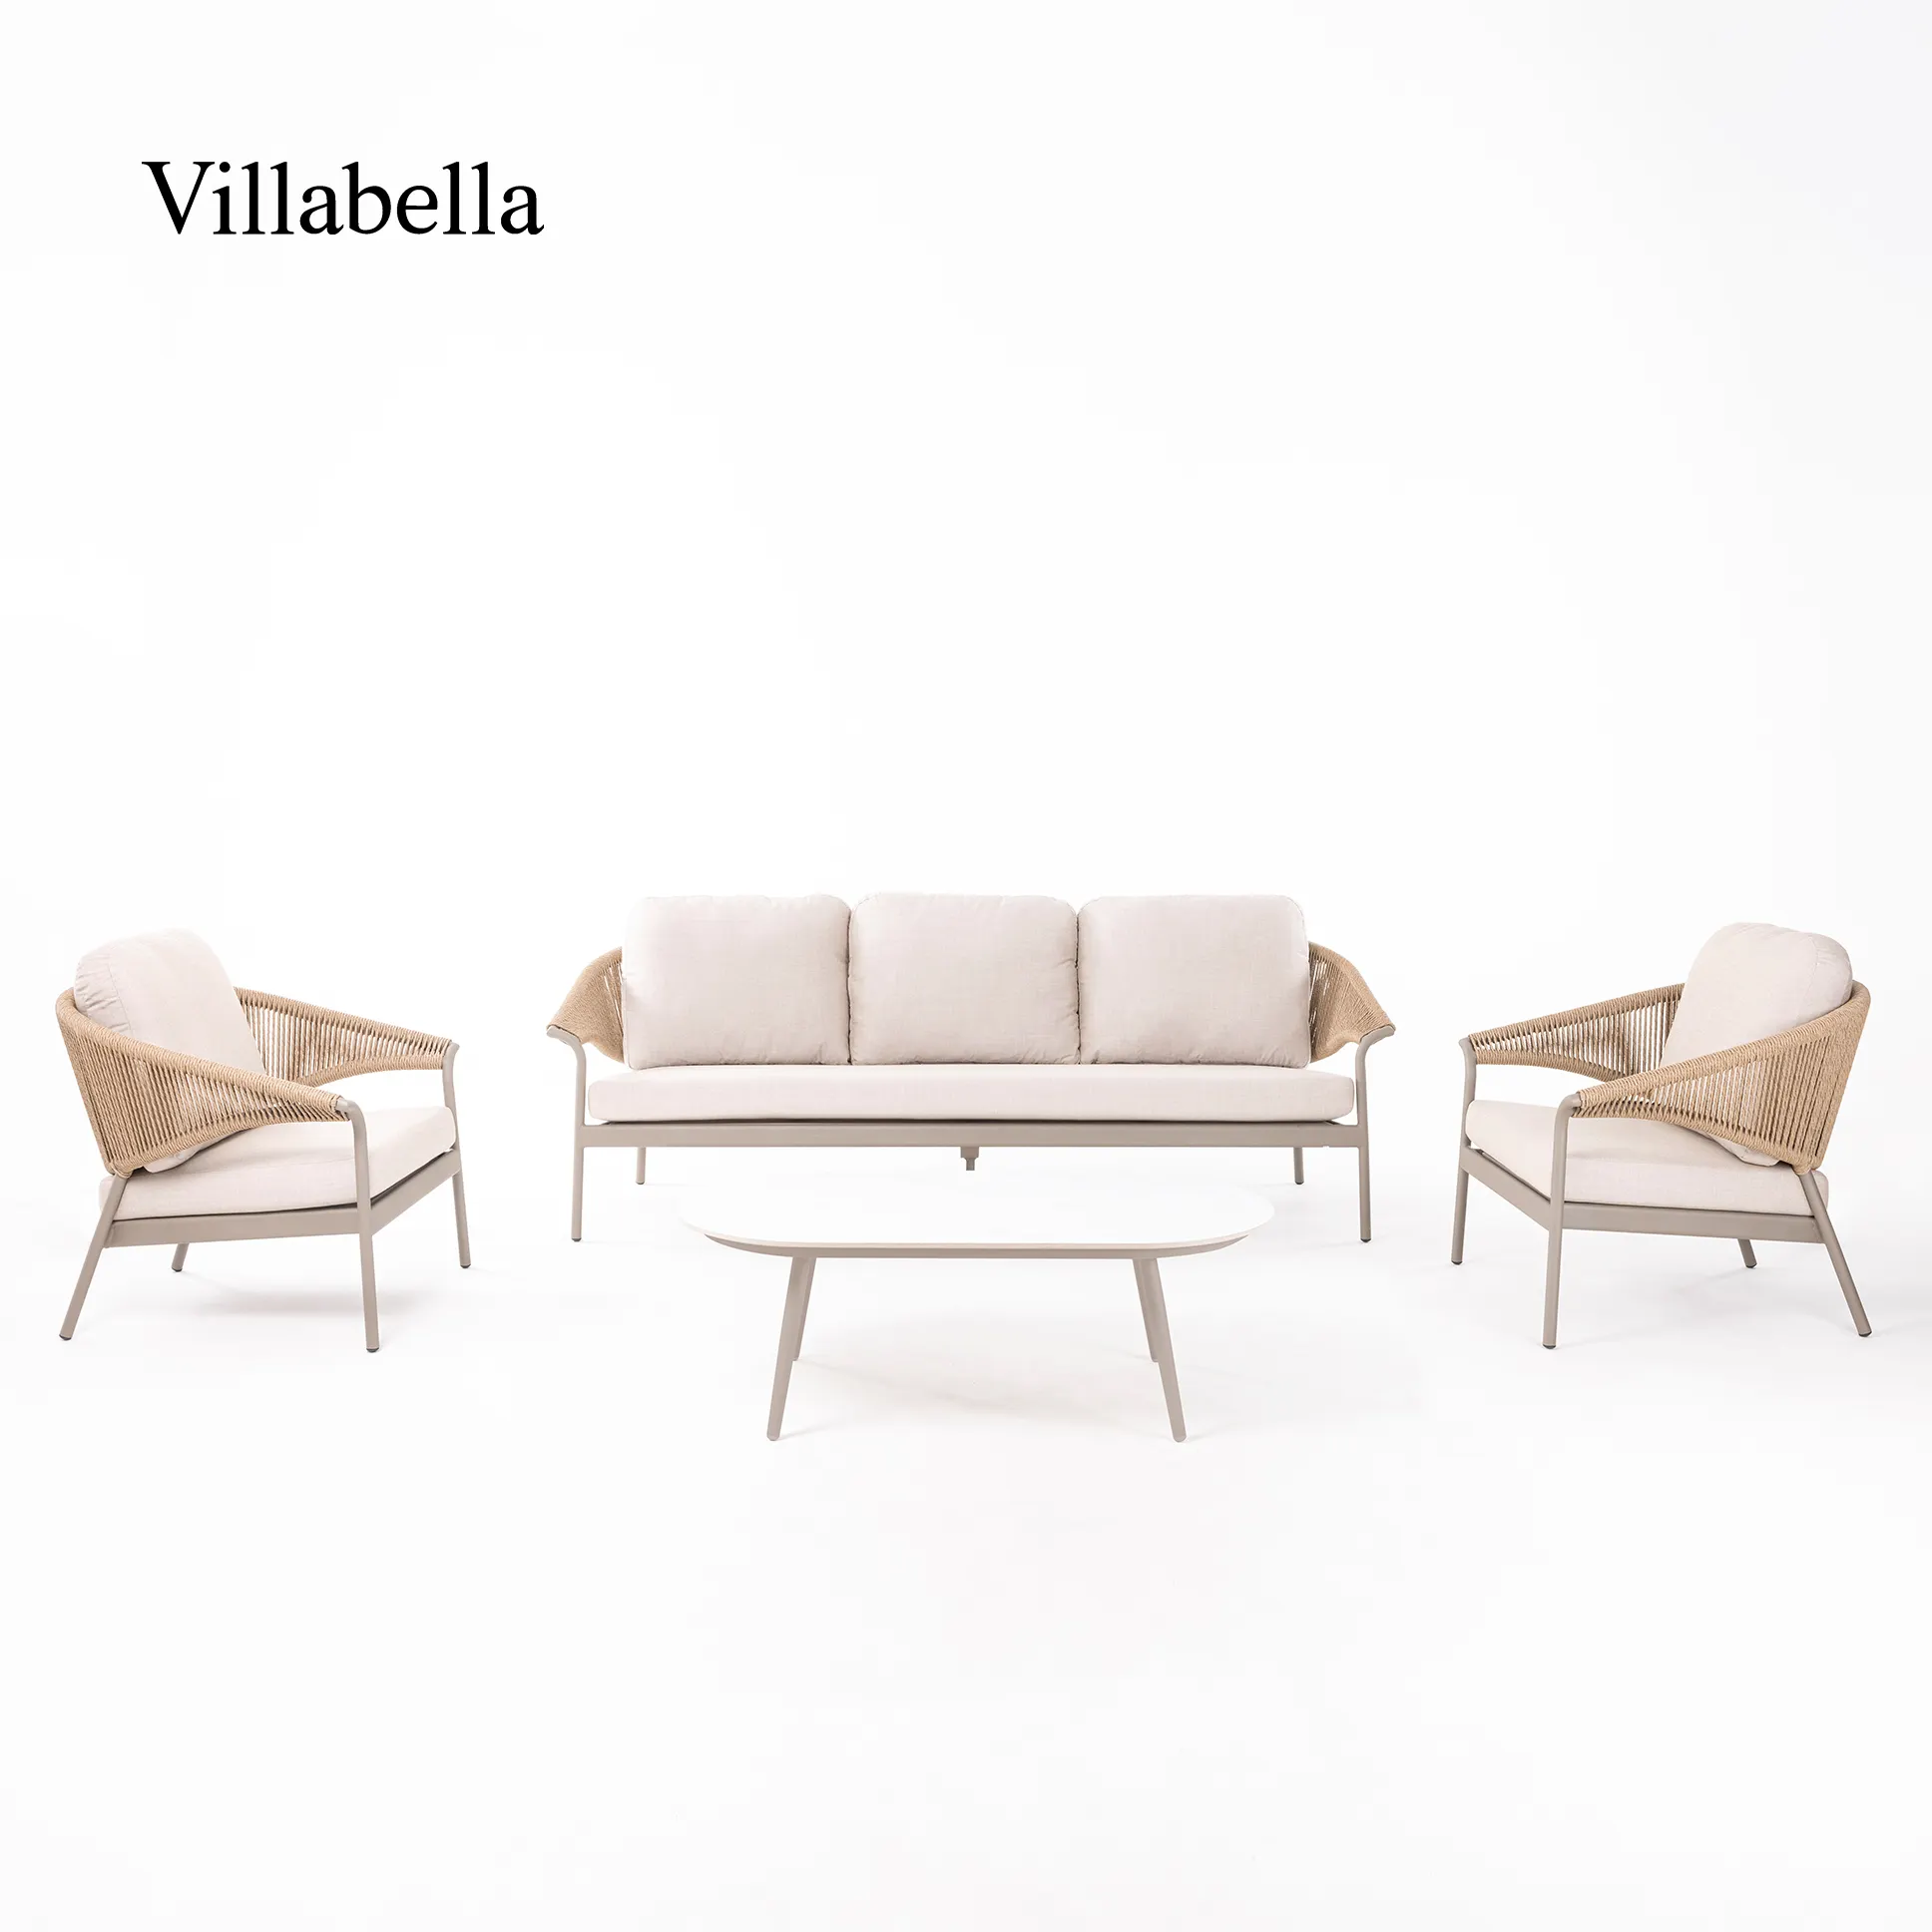 Villabella balcón muebles de mimbre Hotel Villa jardín ratán sofá conjunto moderno muebles de exterior salones sofá jardín conjunto